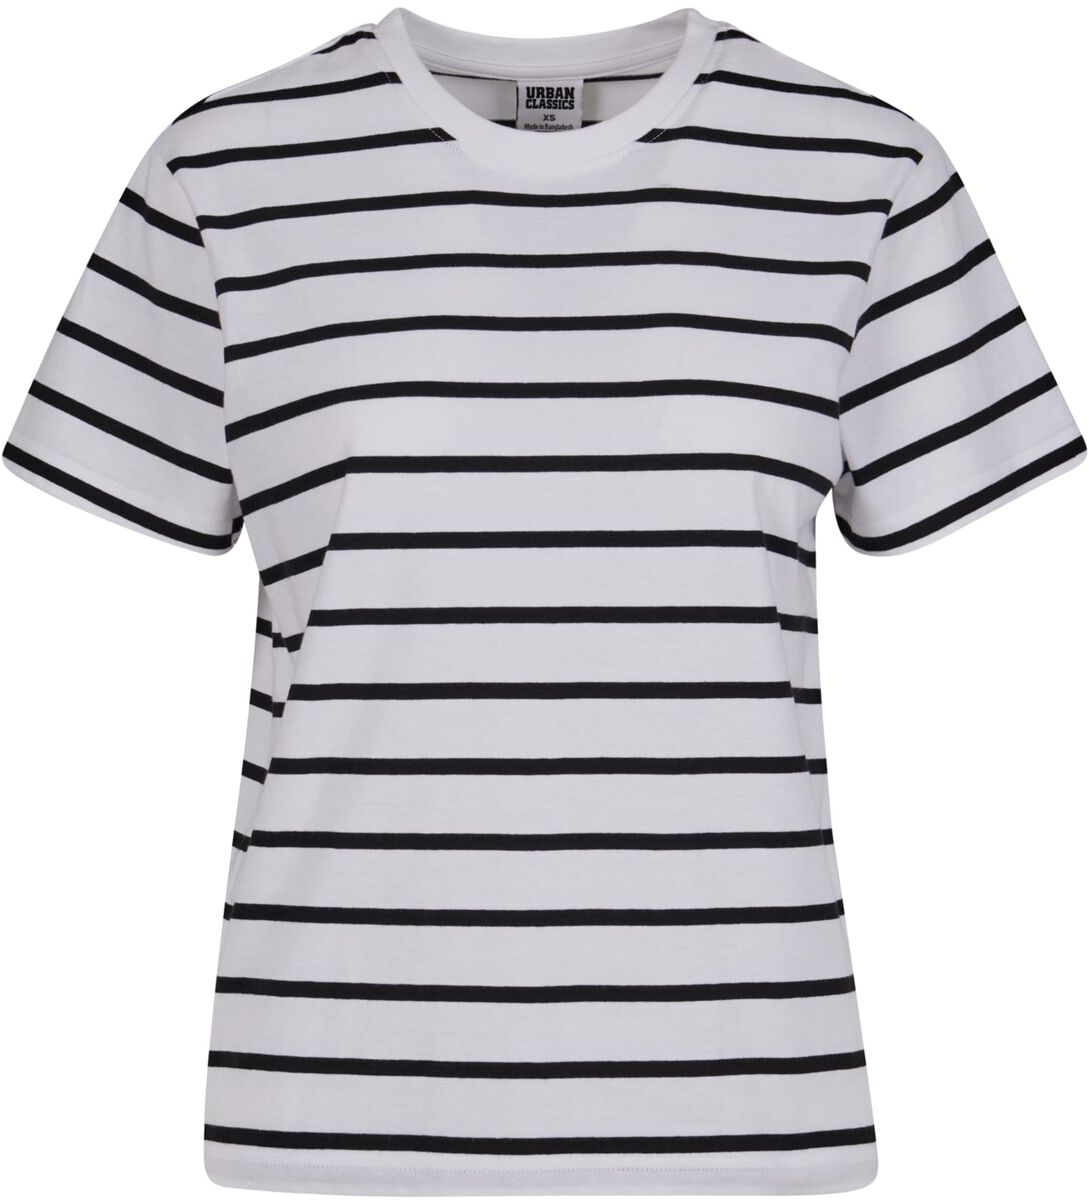 Urban Classics T-Shirt - Ladies Striped Boxy Tee - XS bis 3XL - für Damen - Größe L - schwarz/weiß